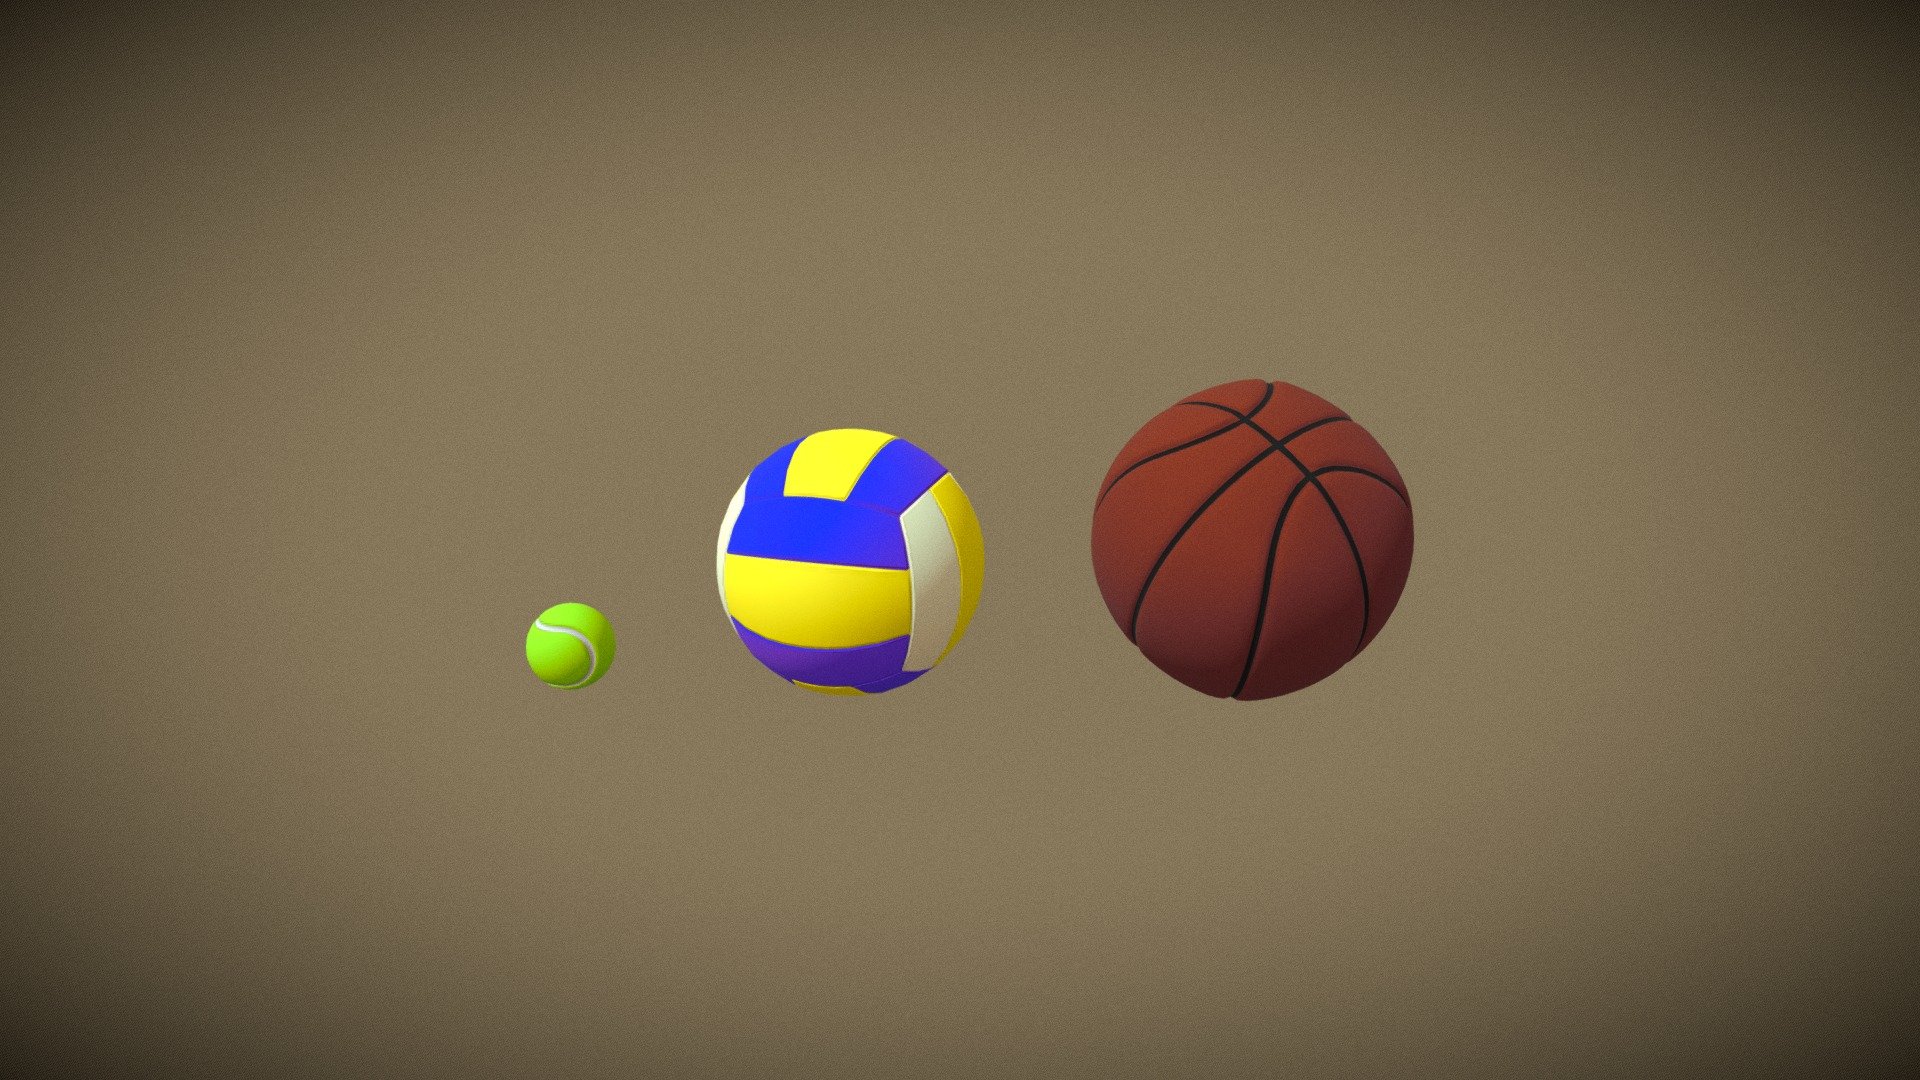 BALLS (TENNIS, VOLLEYBALL, BASKETBALL) - 3D model by bskal 3d model